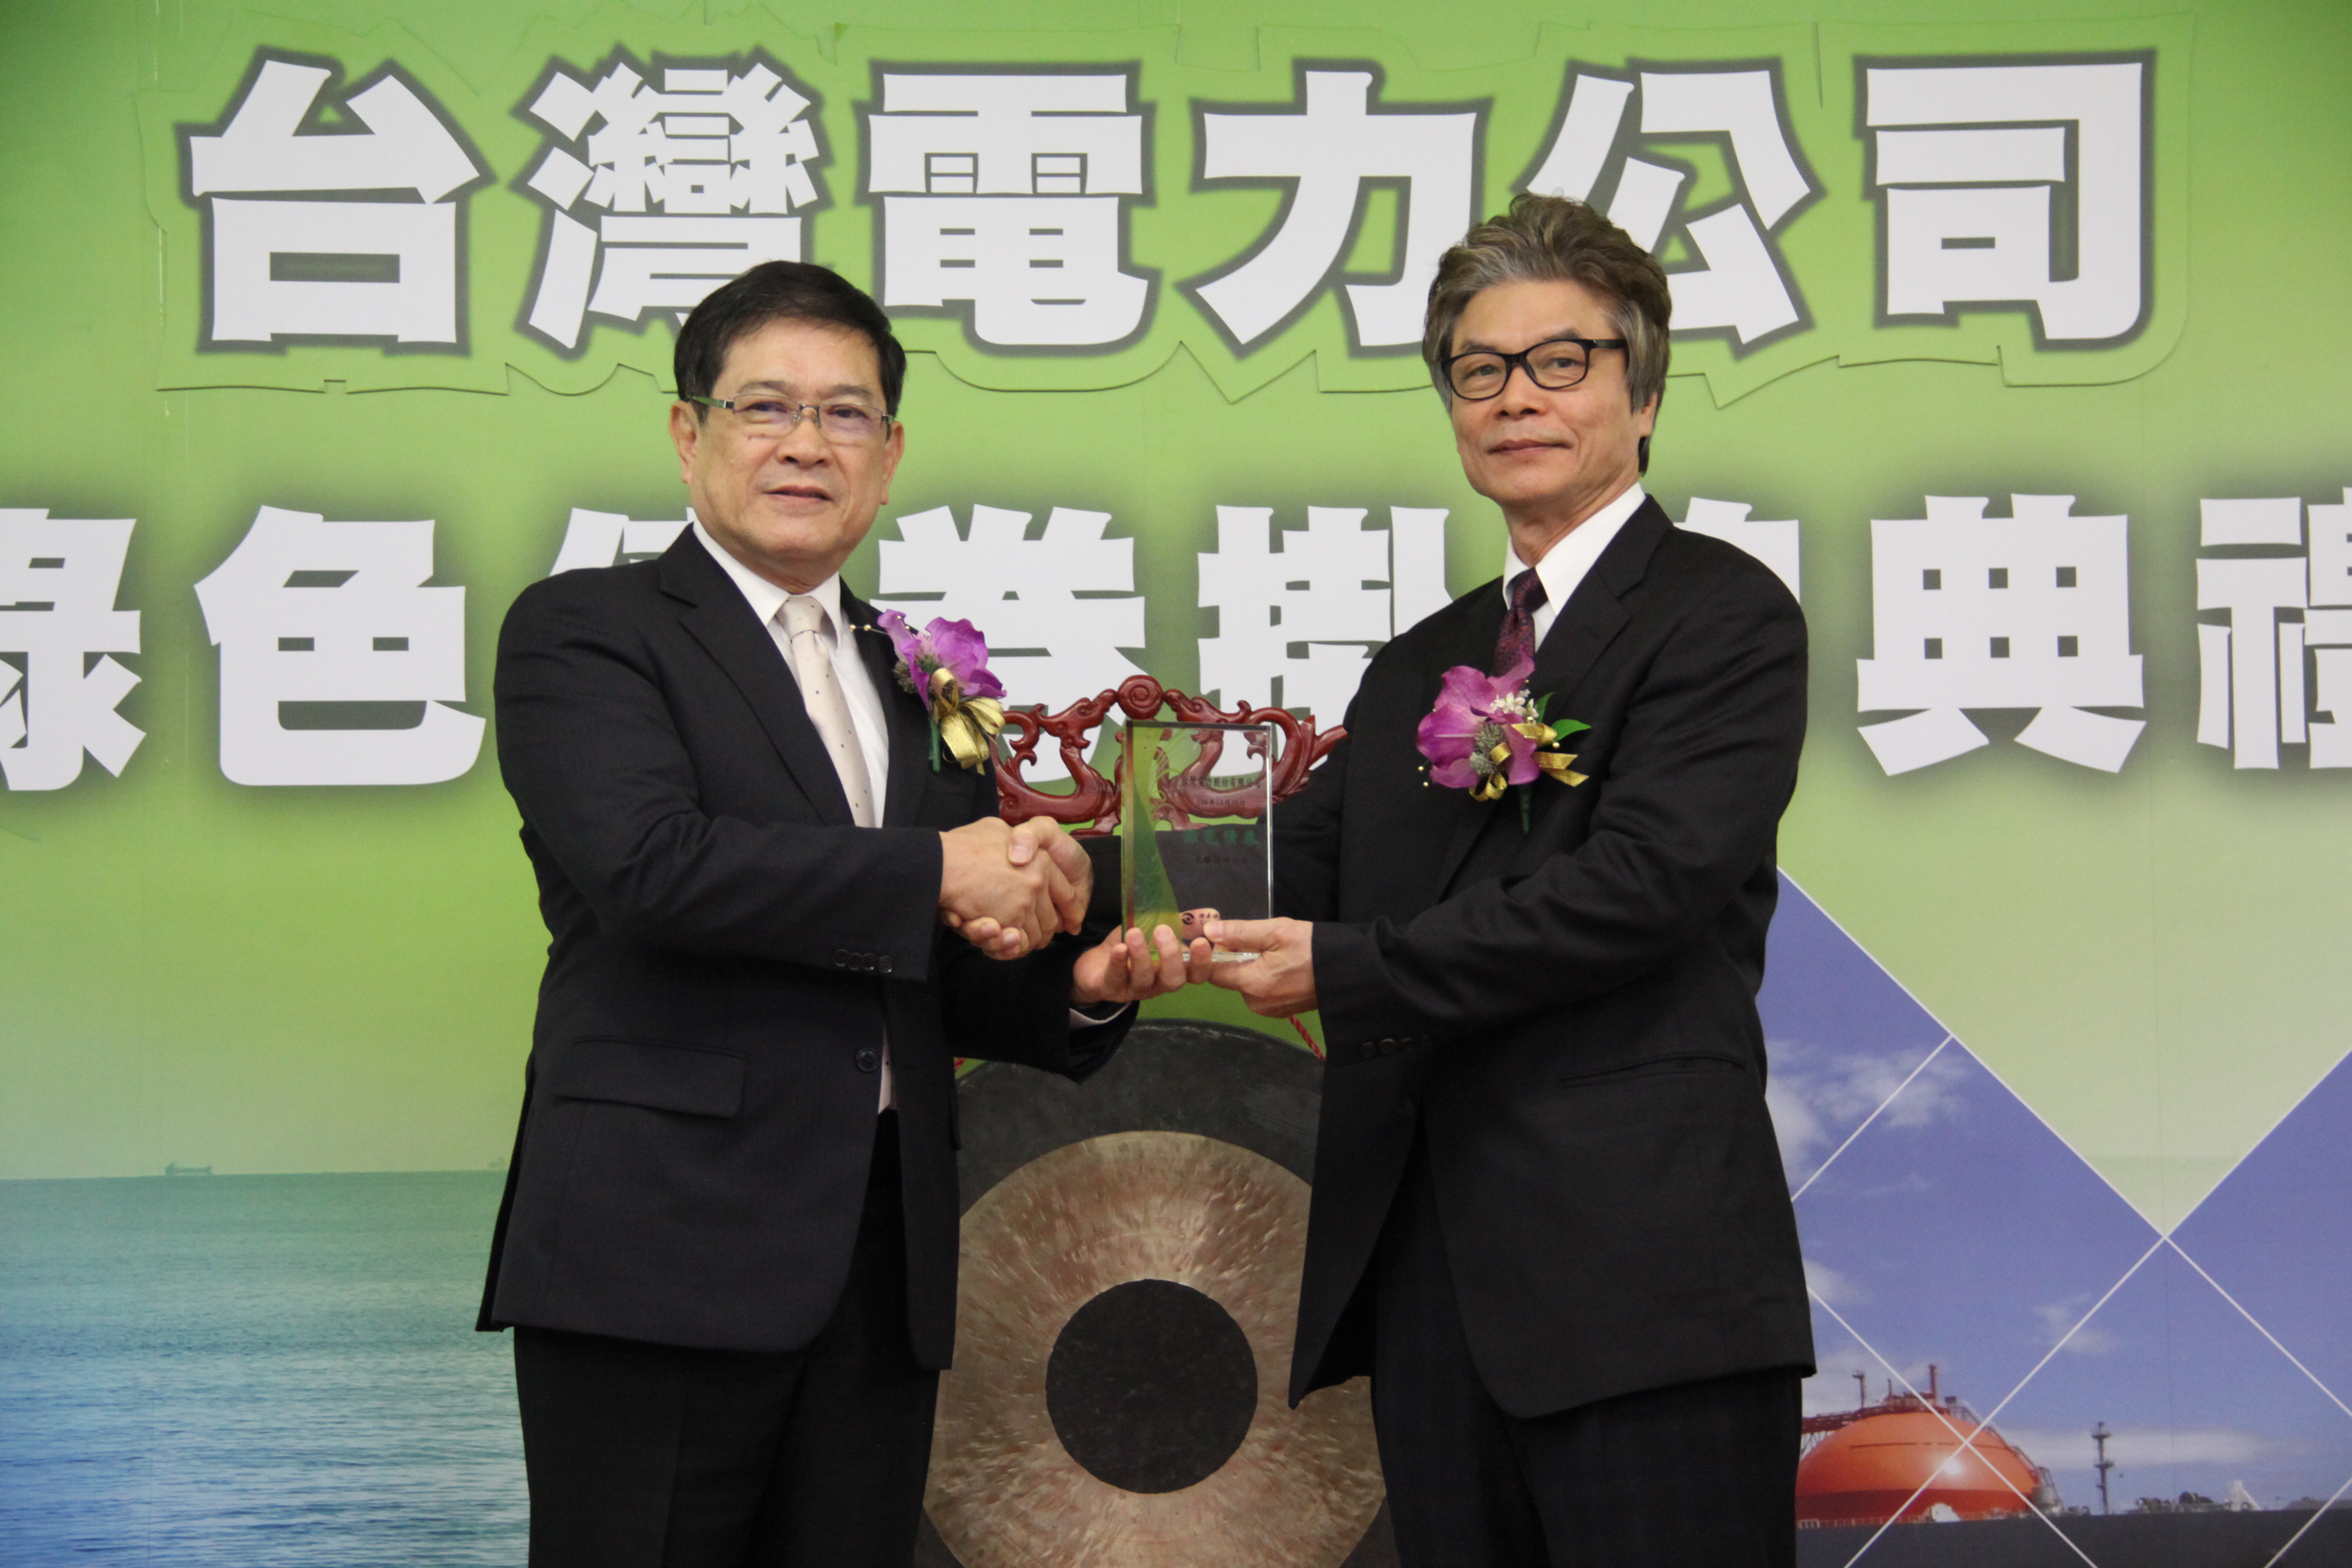 2017年12月15日台灣電力公司綠色債券上櫃掛牌典禮